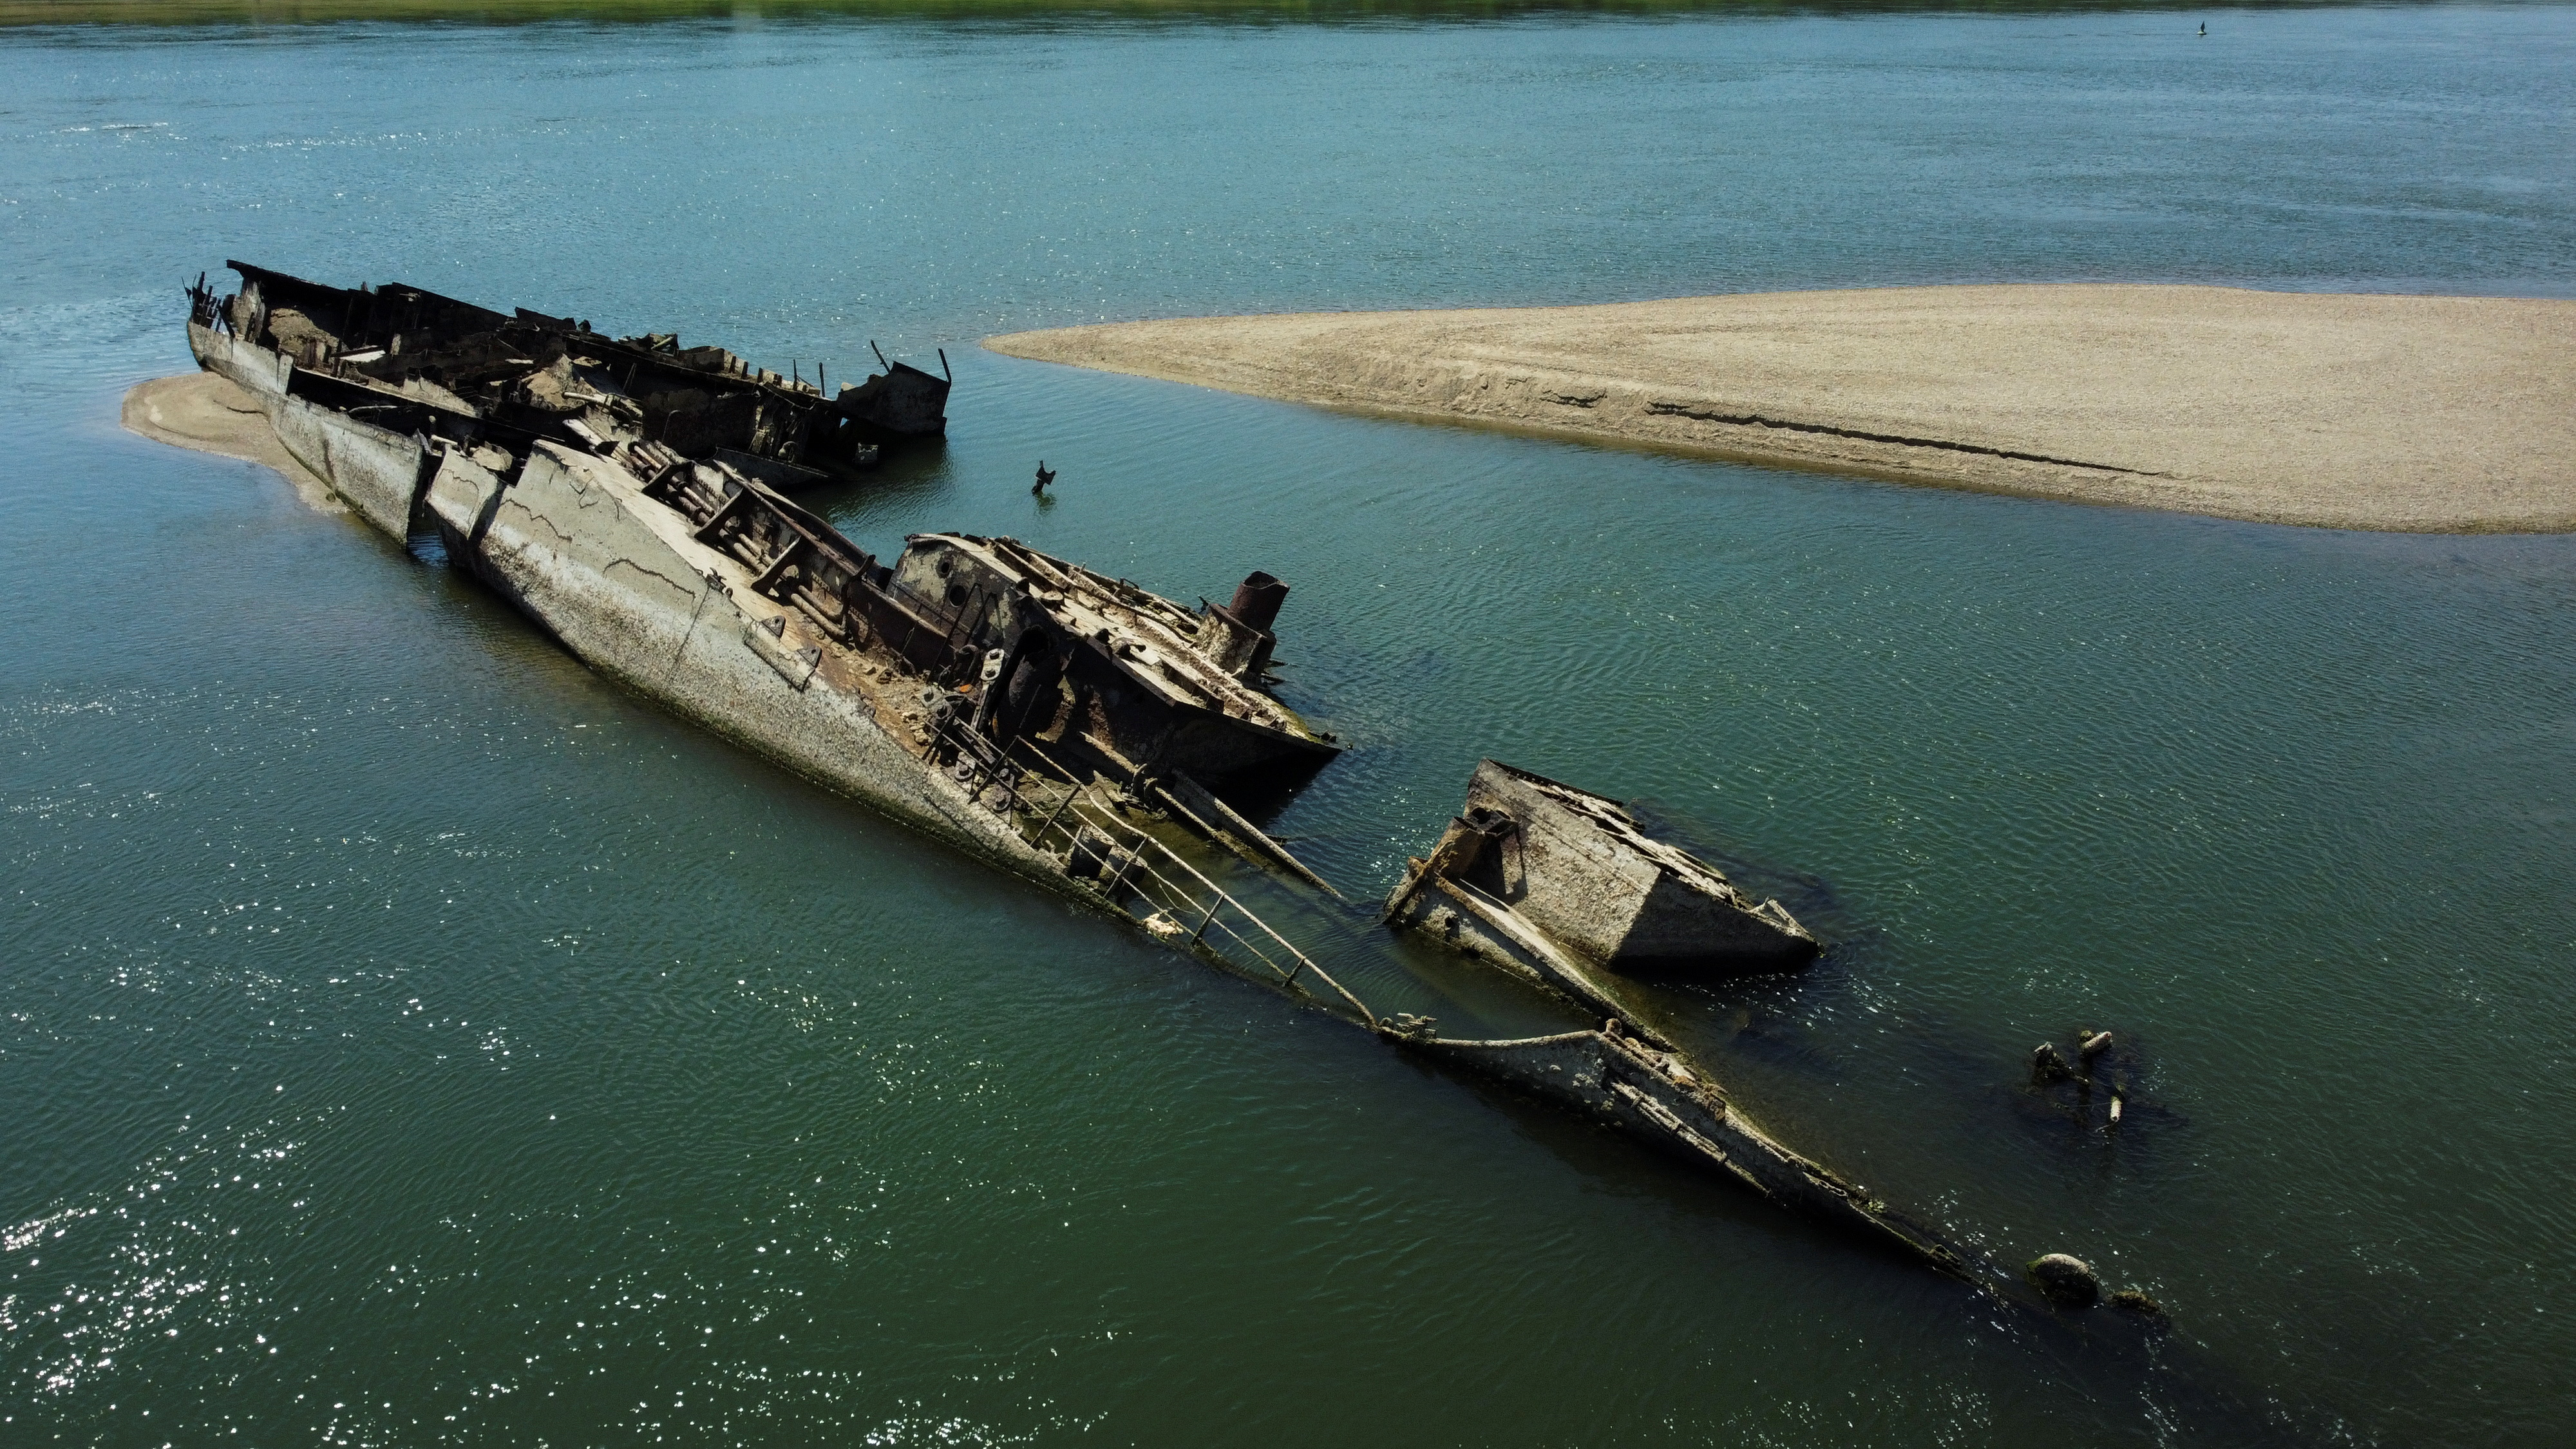 Low water levels on Danube reveal sunken WW2 German warships | Reuters